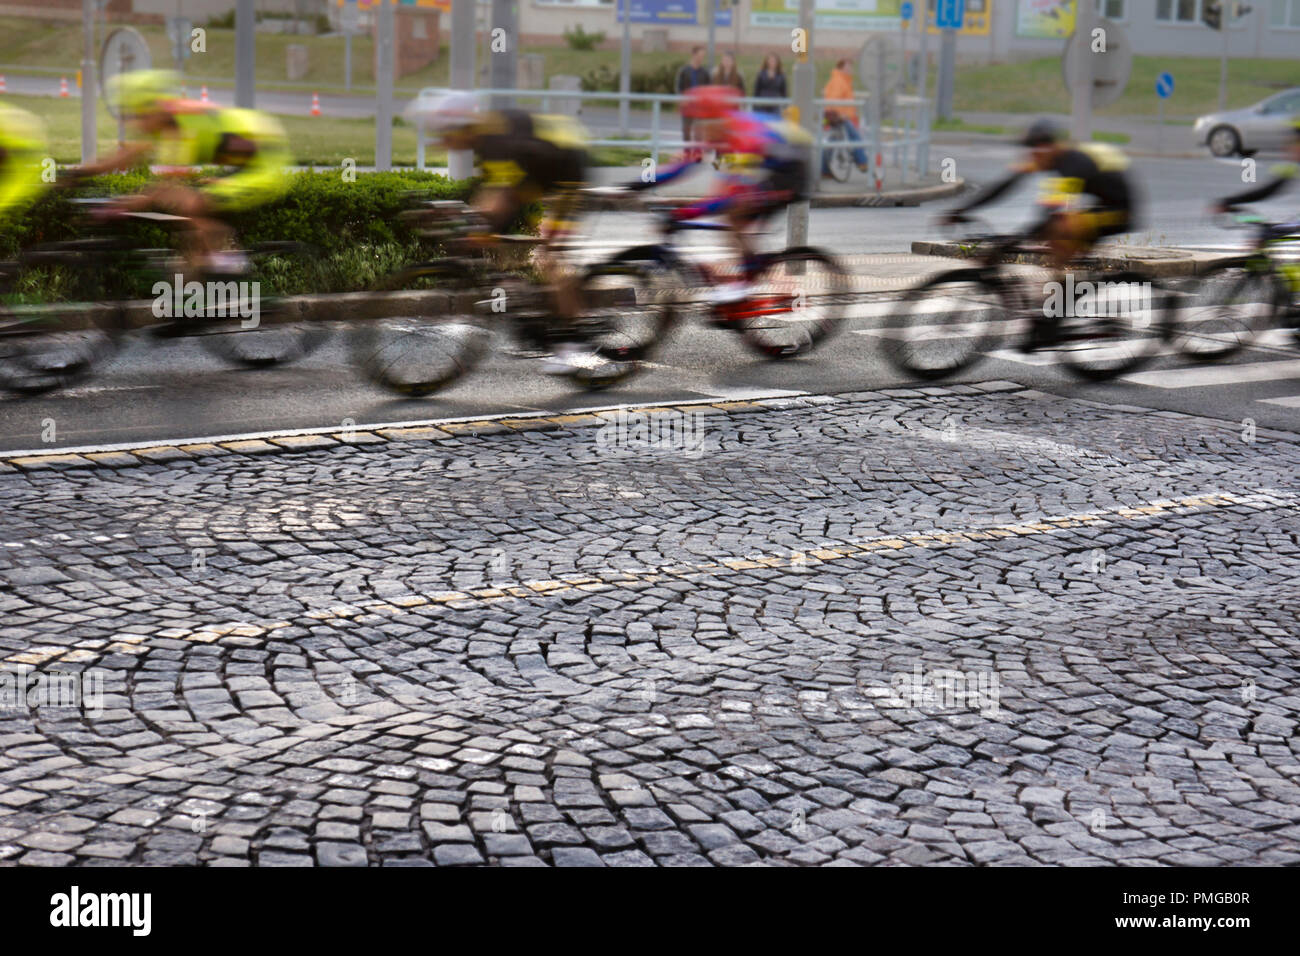 Les cyclistes professionnels sprint lors d'une course cycliste ville Banque D'Images